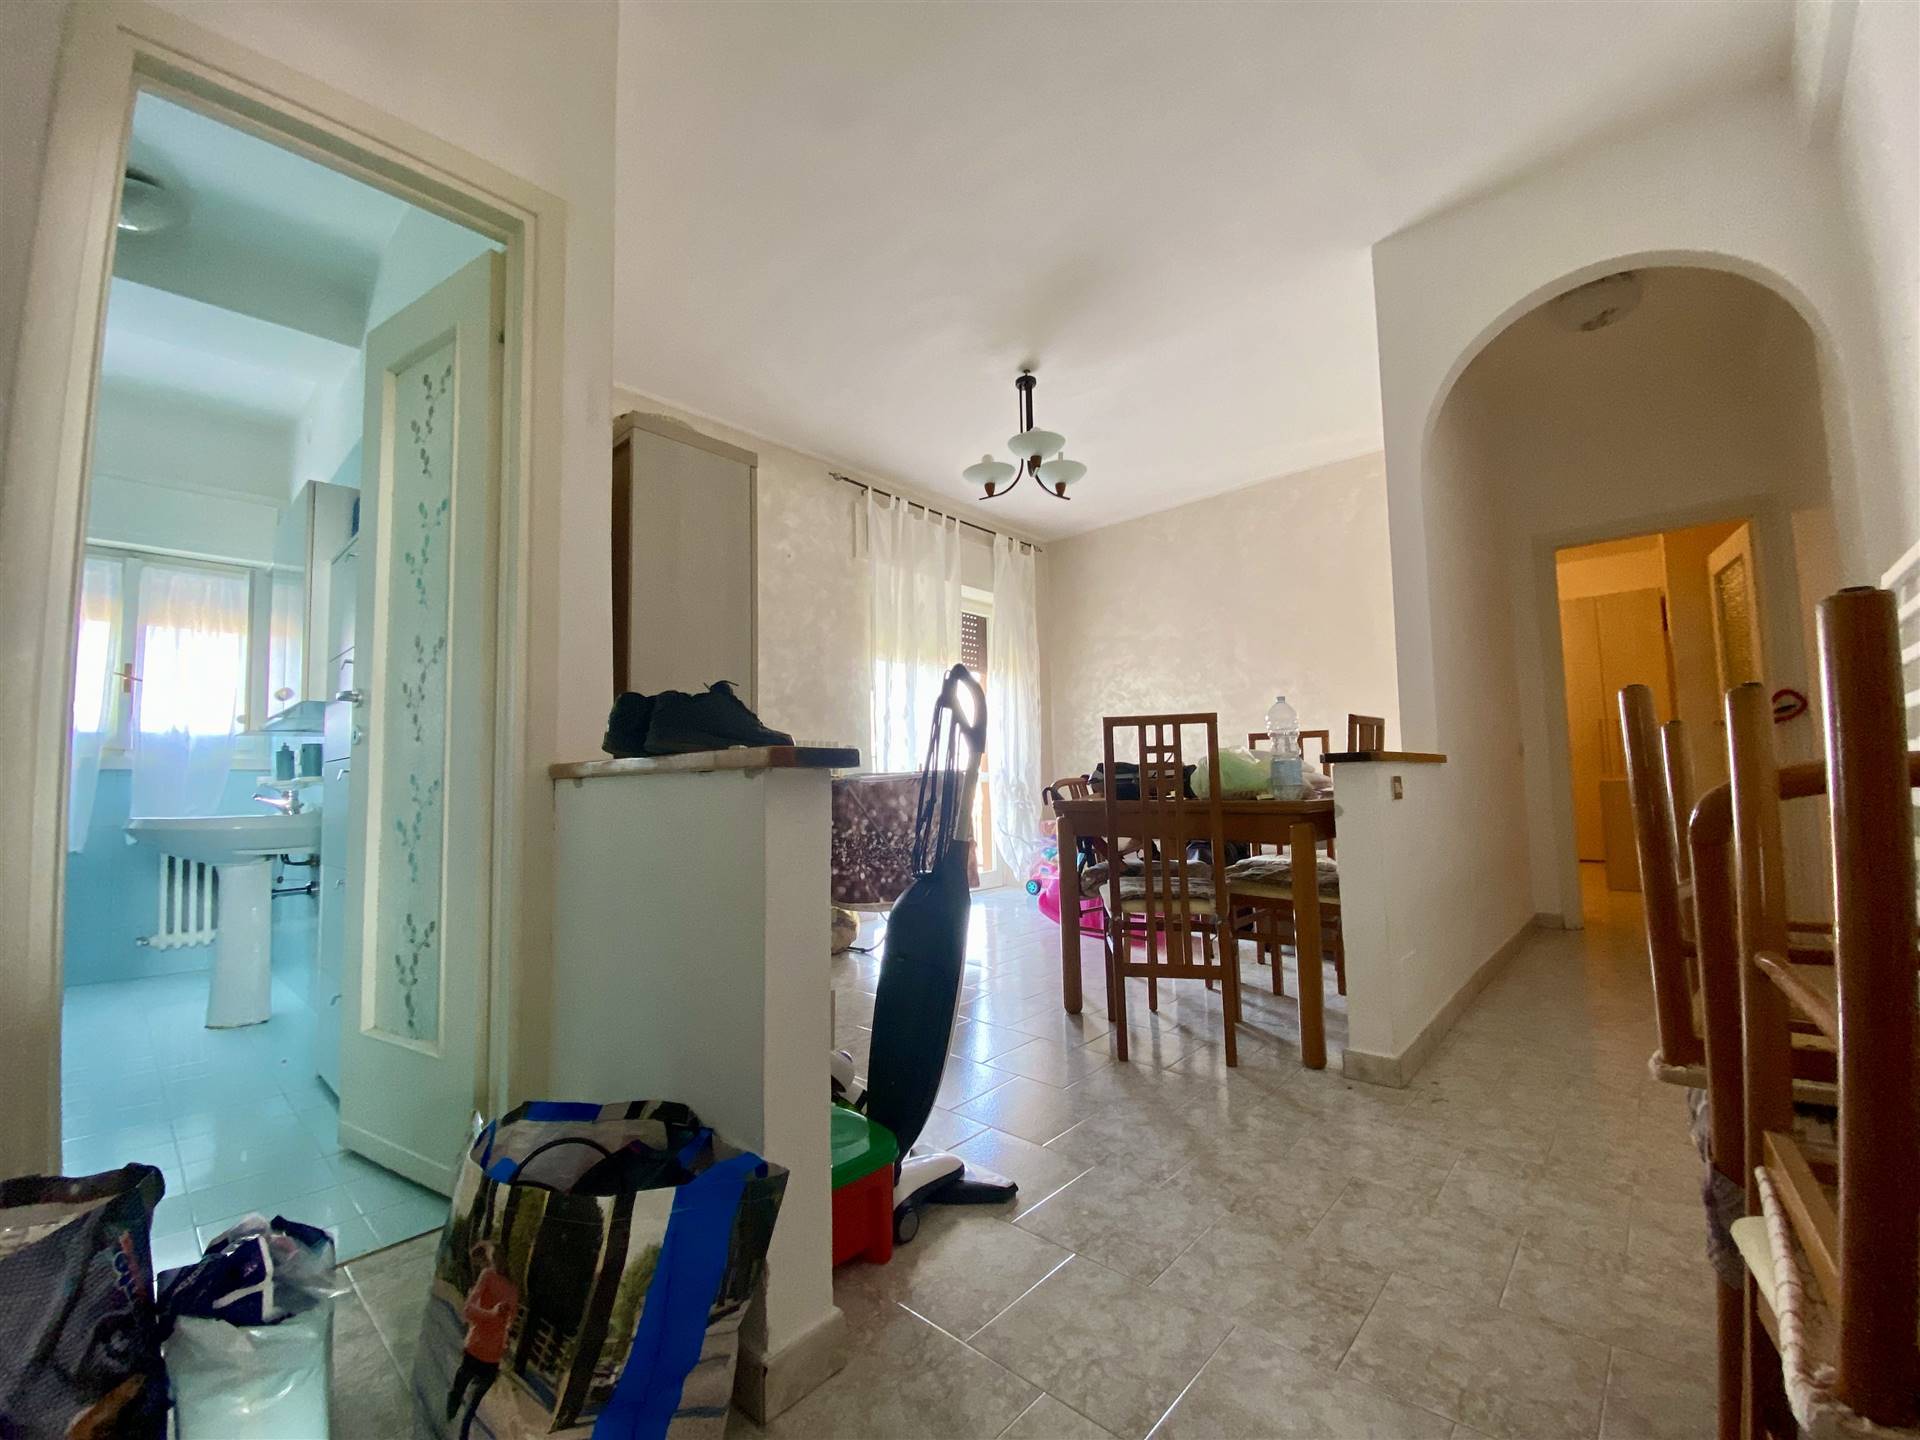 Appartamento in affitto a Senago, 2 locali, zona Località: CENTRO, prezzo € 600 | CambioCasa.it